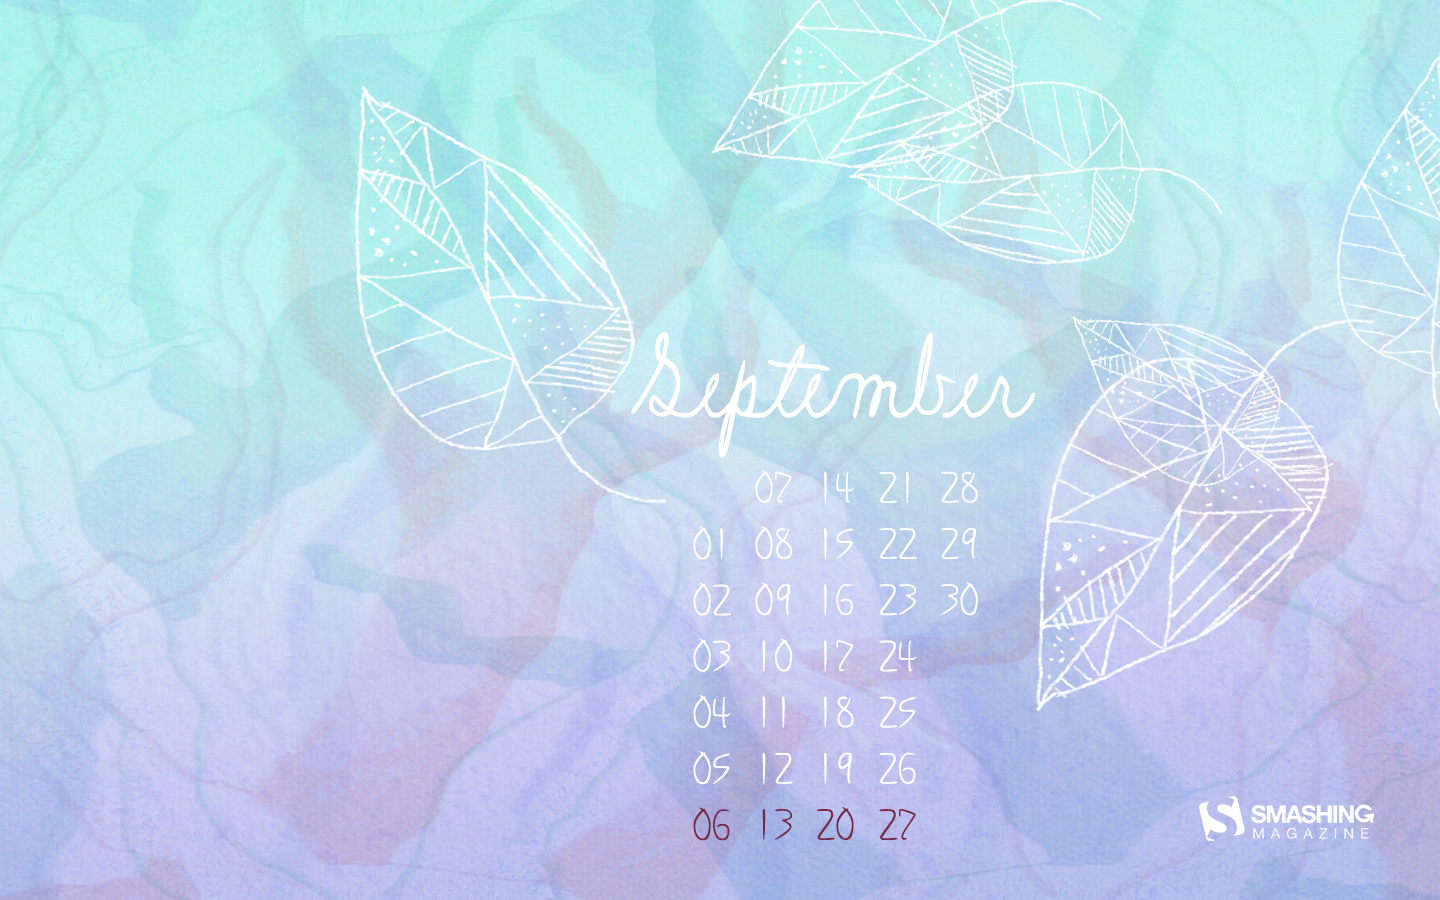 Desktop Wallpaper Calendars September Smashing Magazine